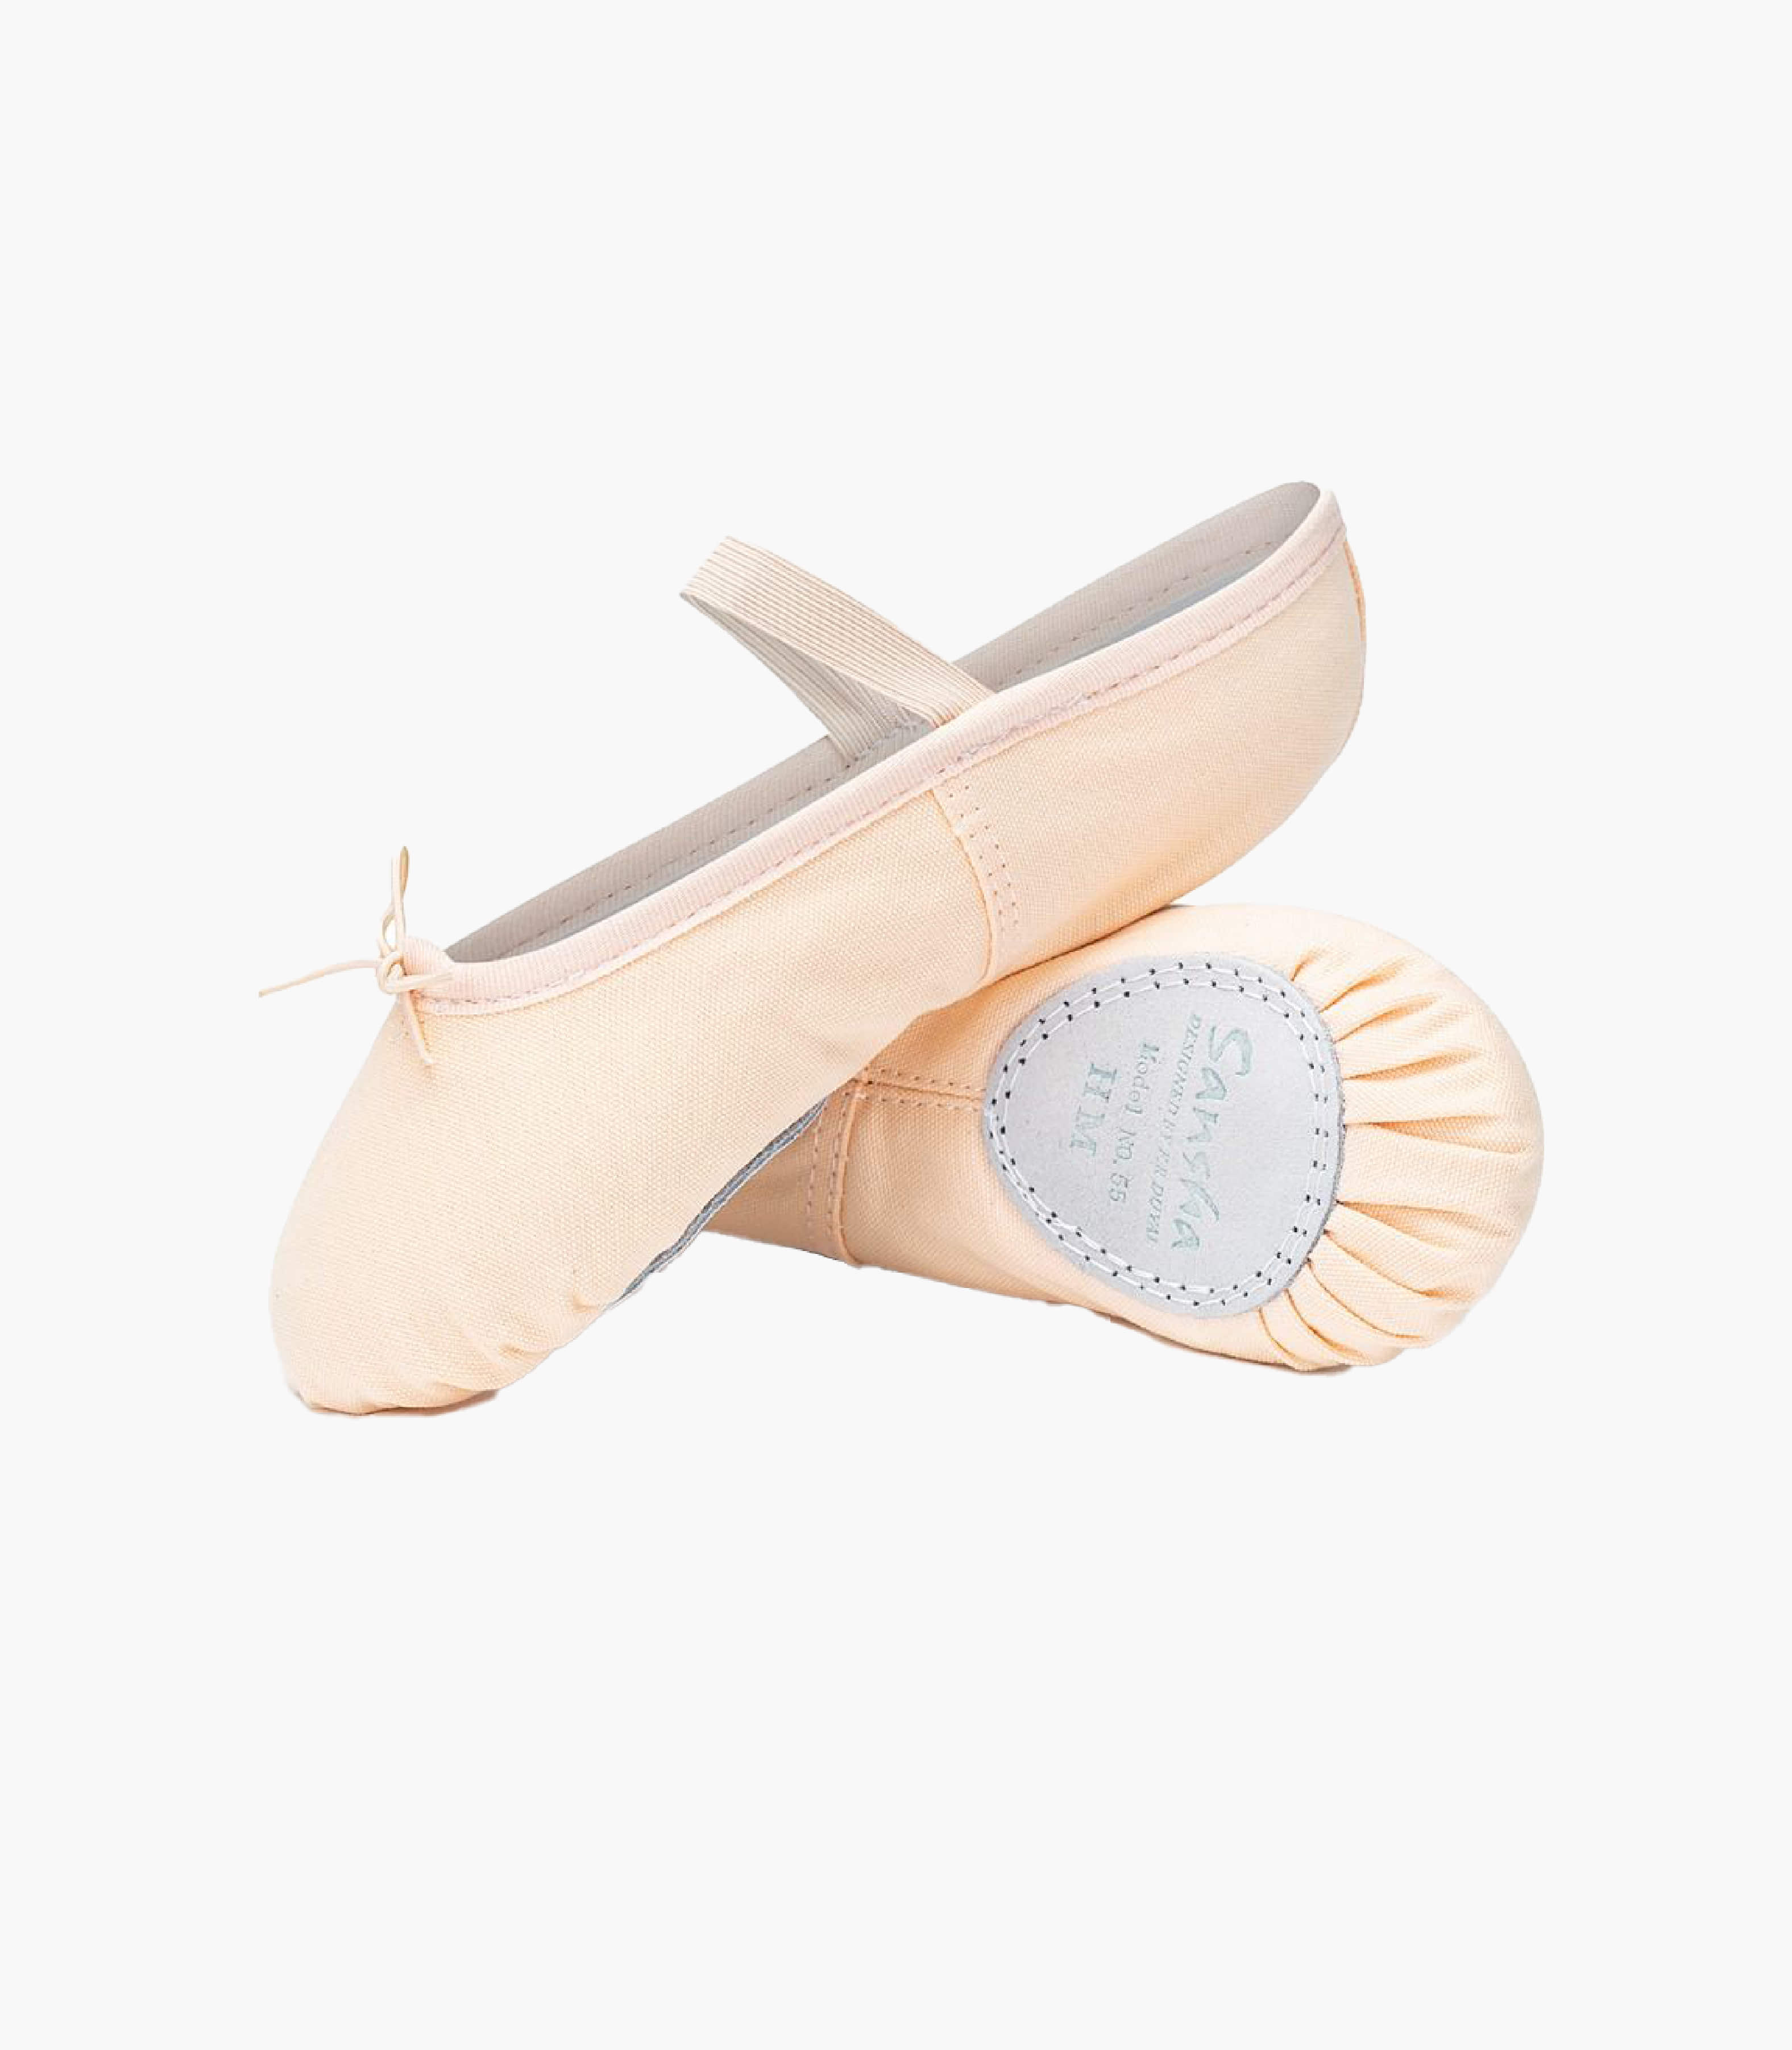 [Sansha] Tina Shoes